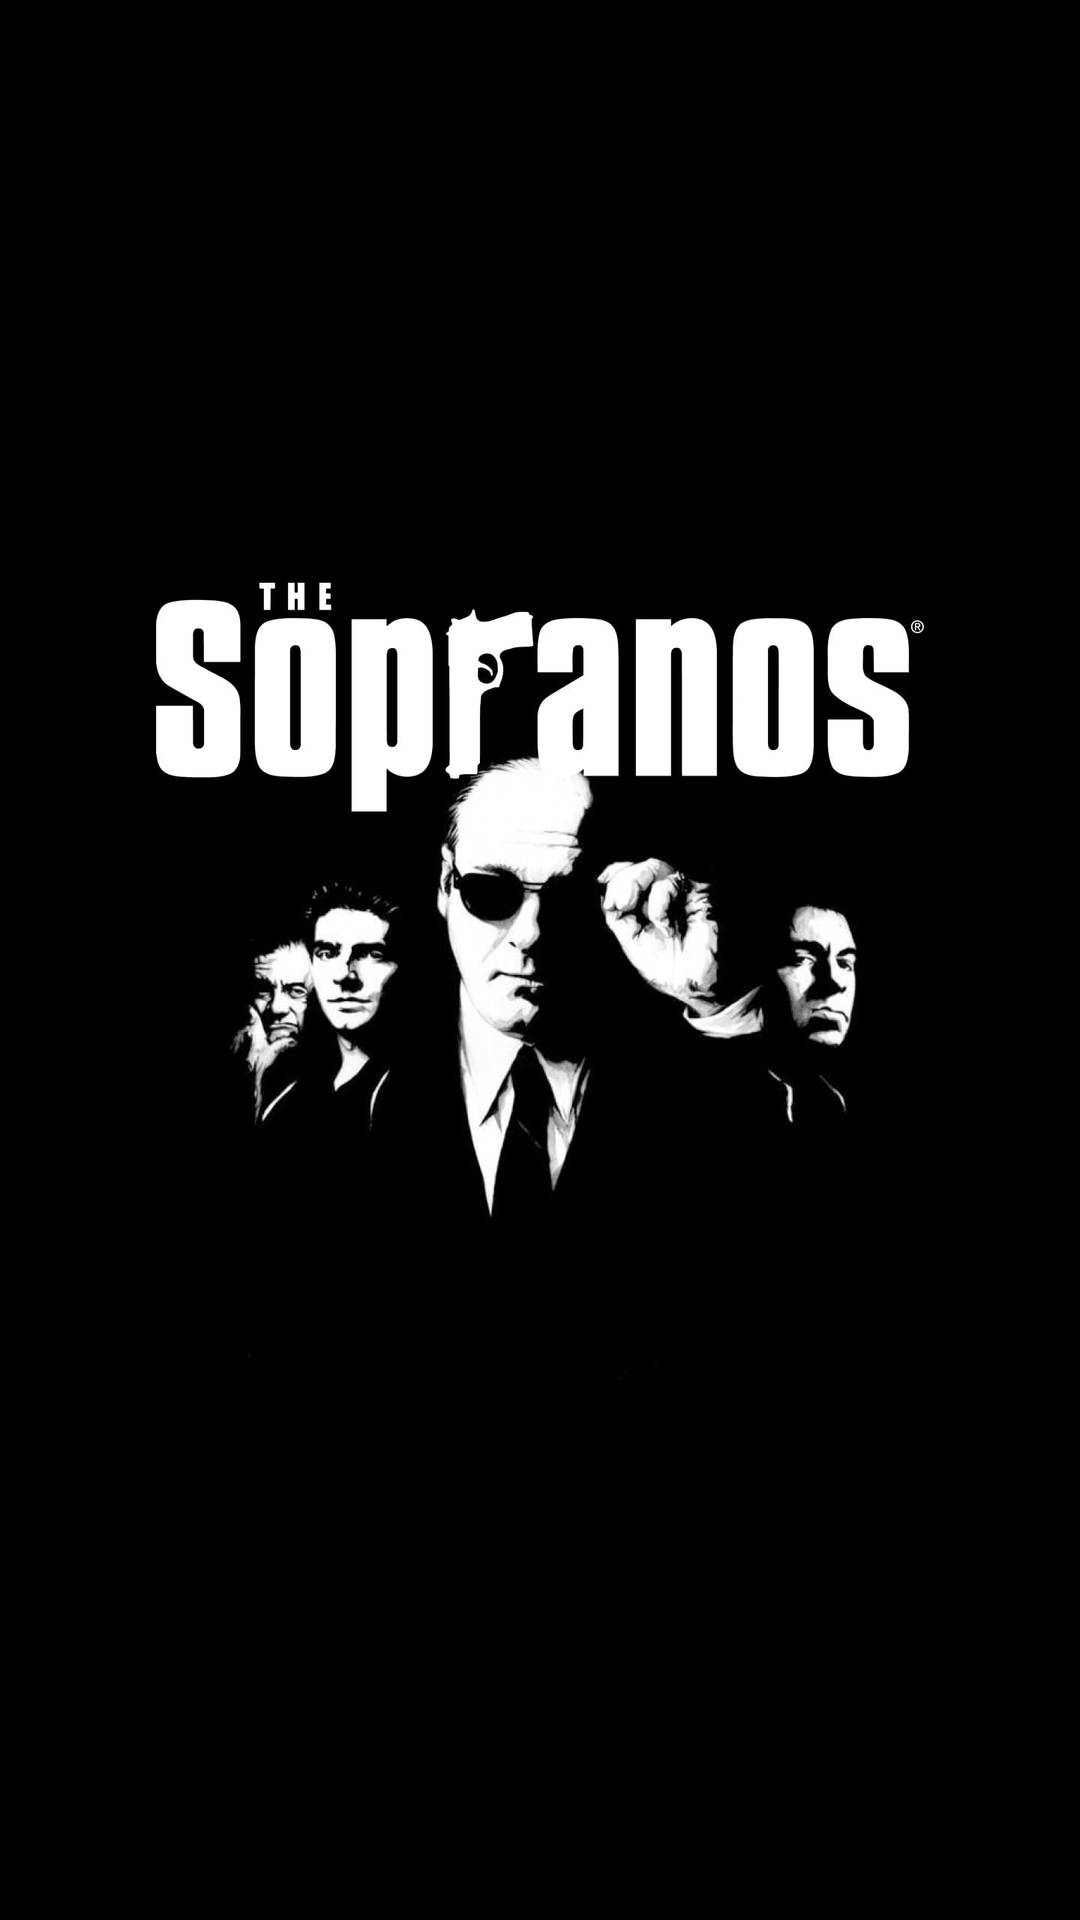 The Sopranos Poster Mafia Background